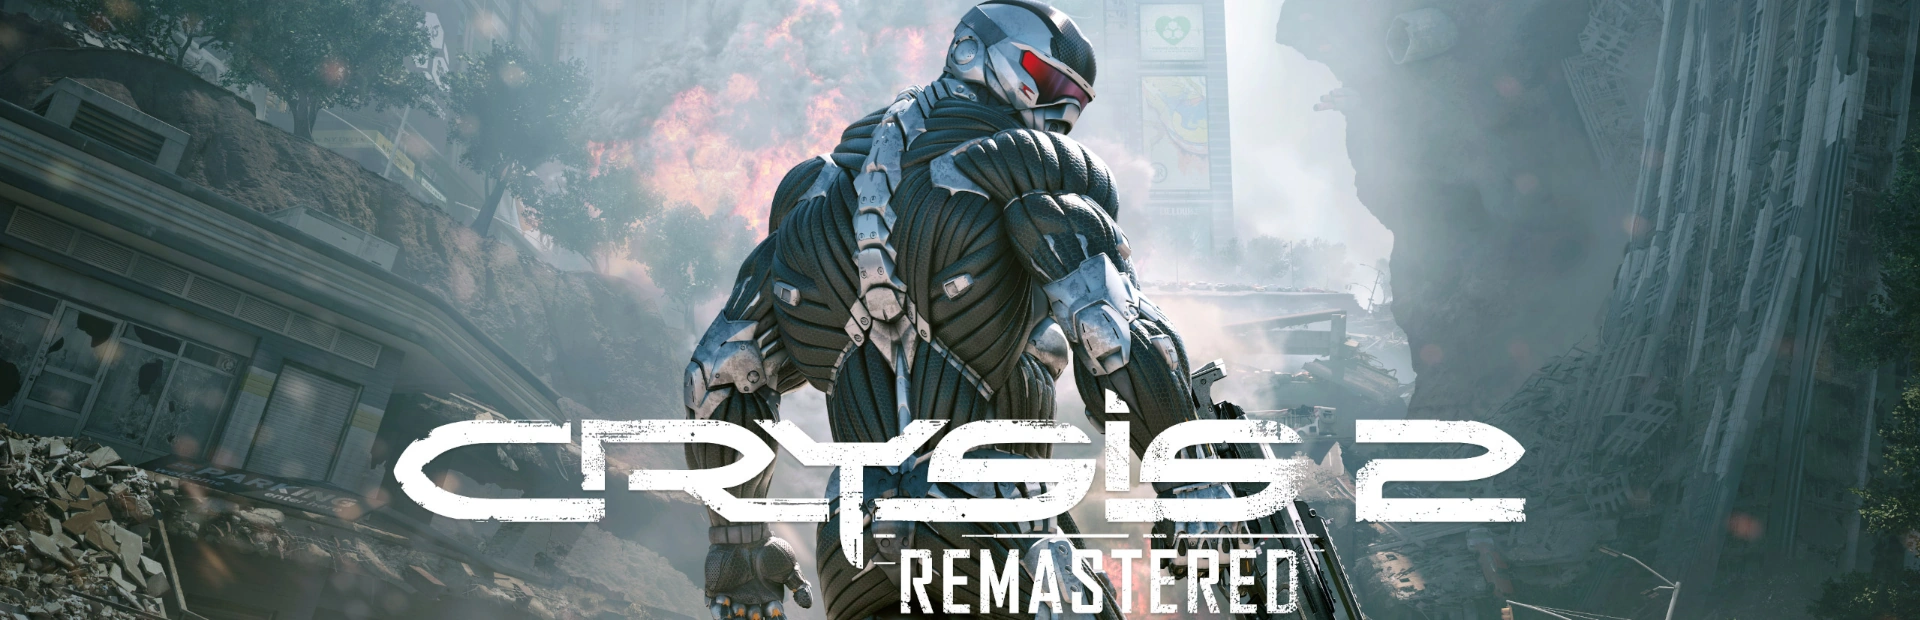 دانلود بازی Crysis 2 Remastered برای کامپیوتر